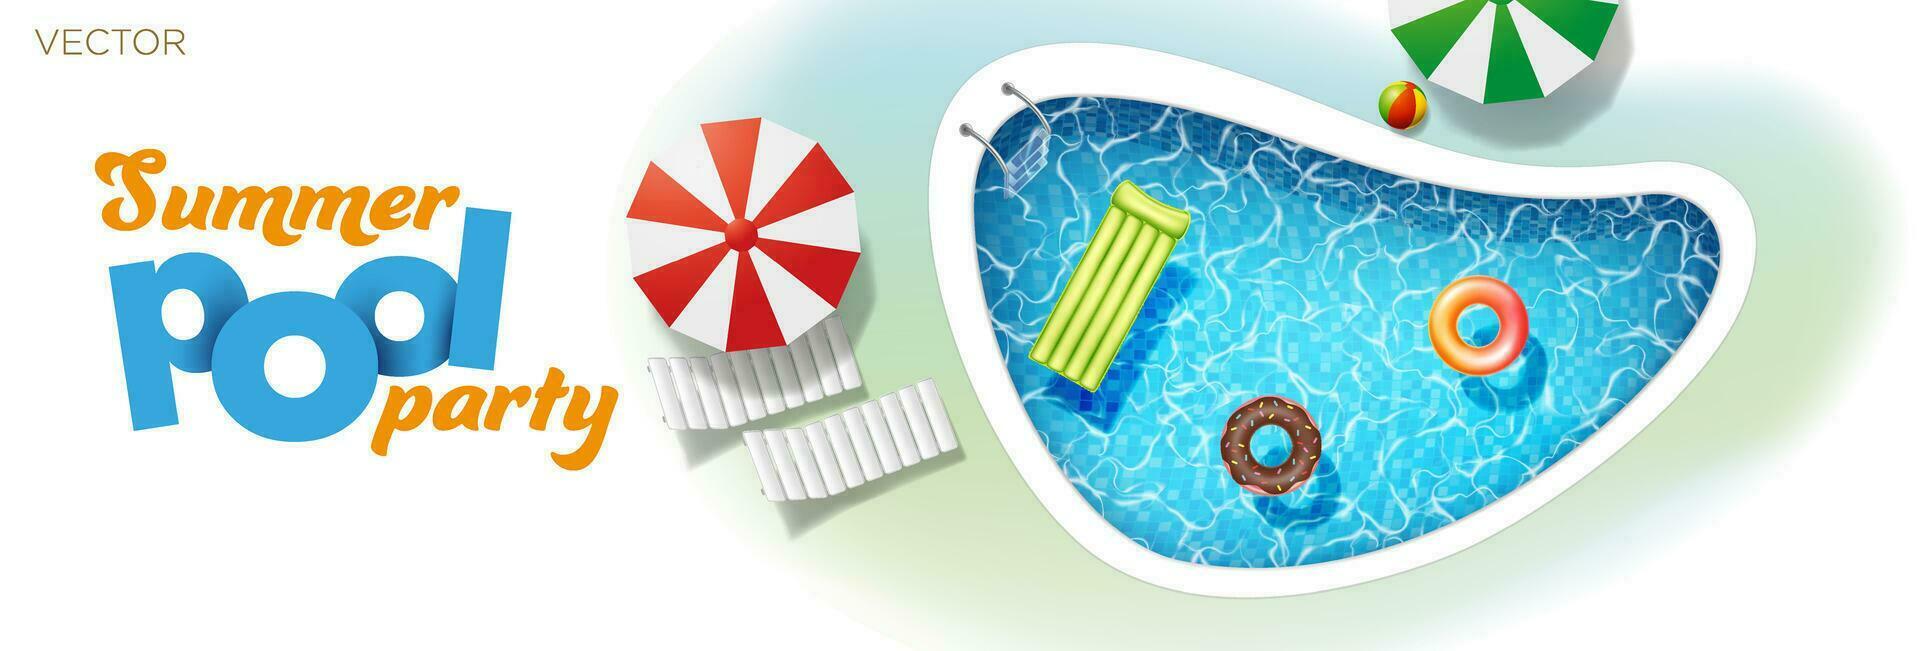 opblaasbaar matras bal en zwembad ringen in zwemmen zwembad zonnebank paraplu. poster sjabloon voor zomer vakantie. zomer zwembad feest. vlak stijl vector illustratie